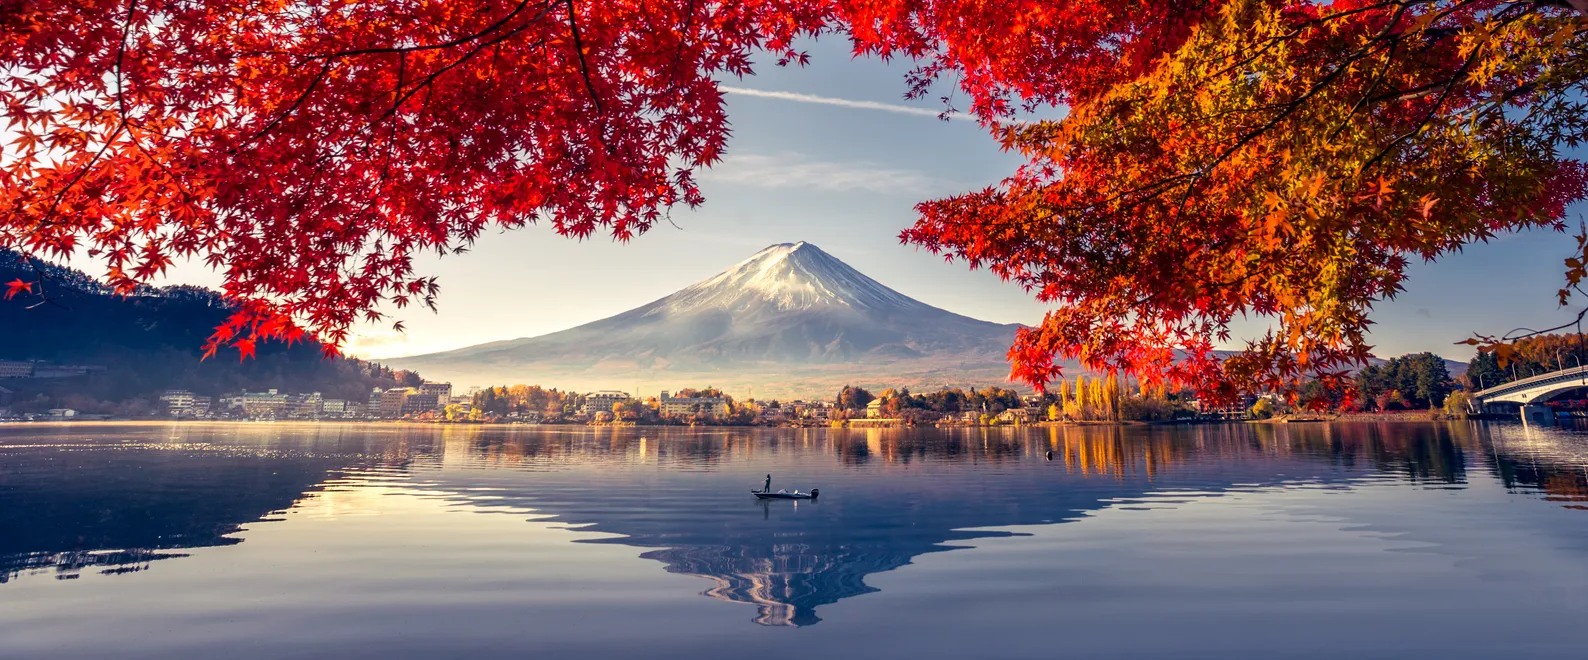 Le lac Kawaguchiko en automne au Japon avec le mont Fuji en arrière-plan.  © iStock / thitivong